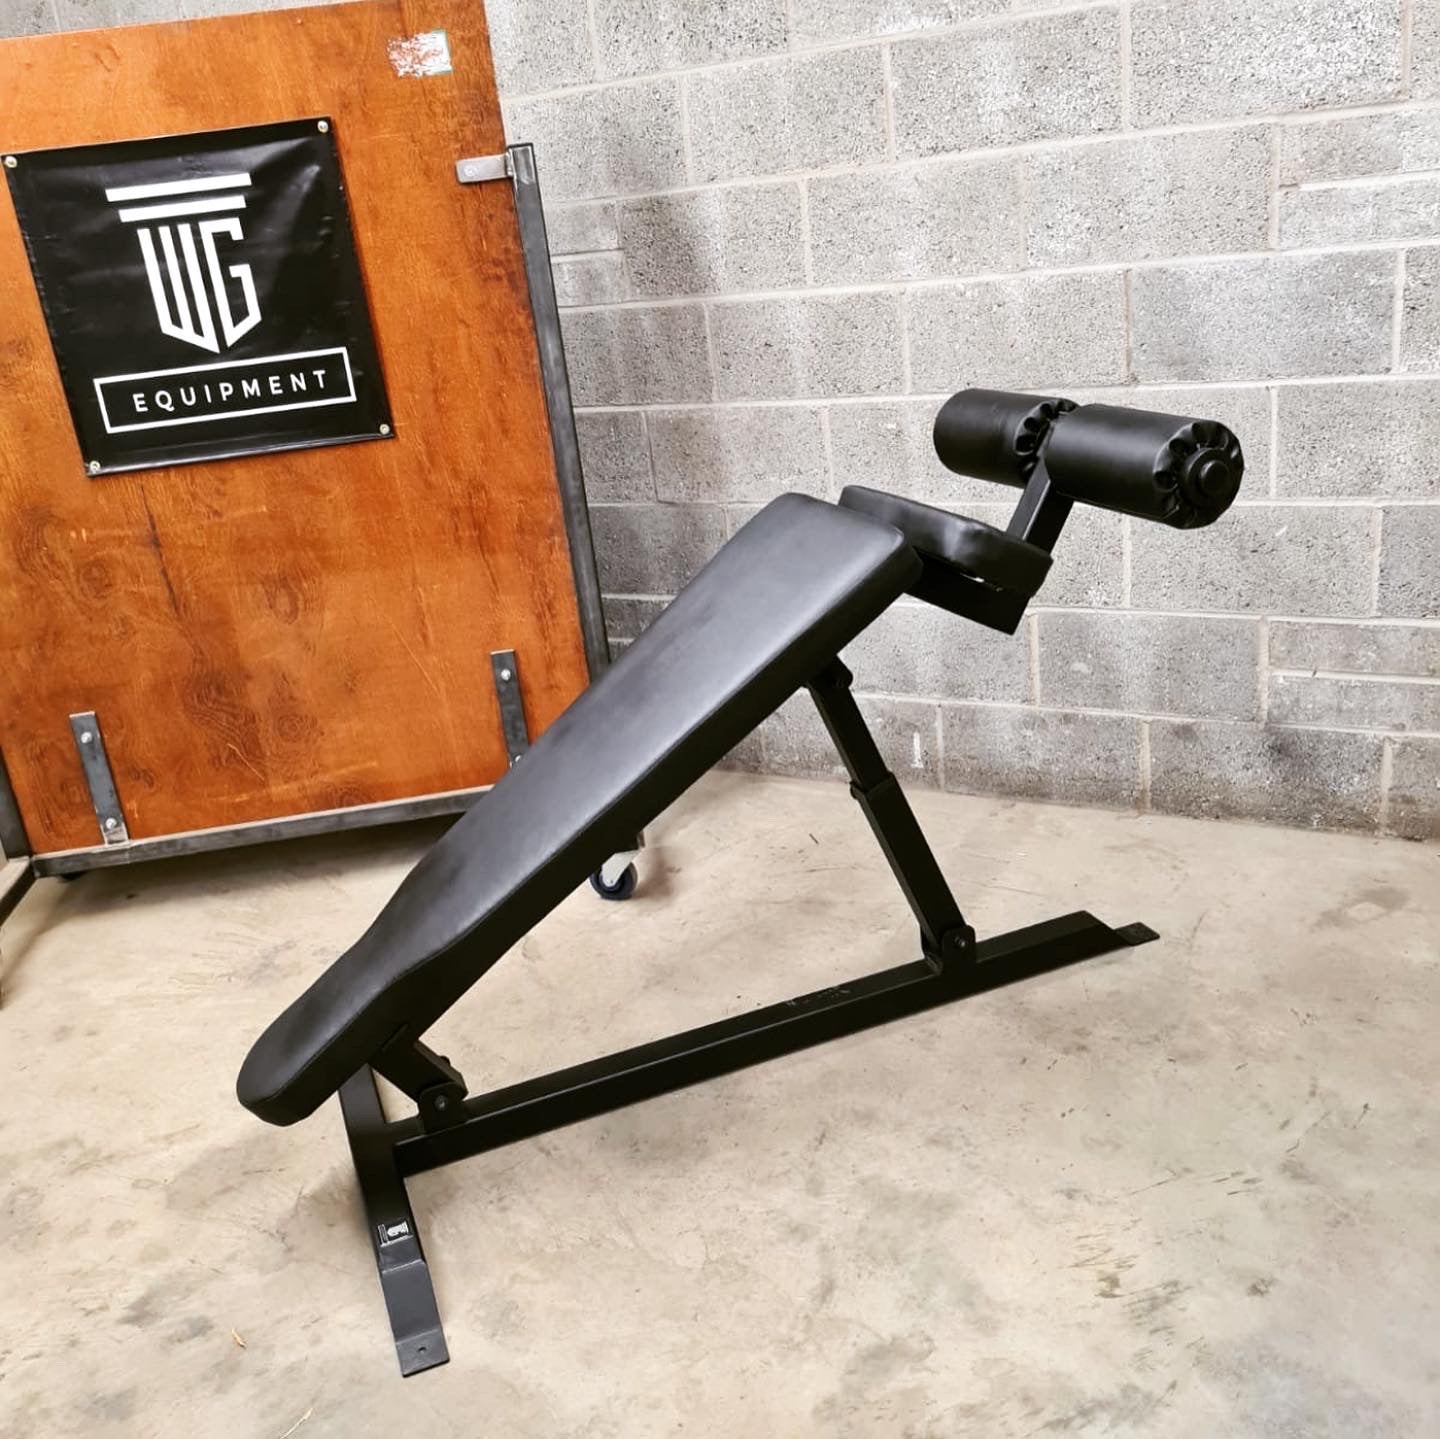 Decline Sit Up Bench – WG Equipment